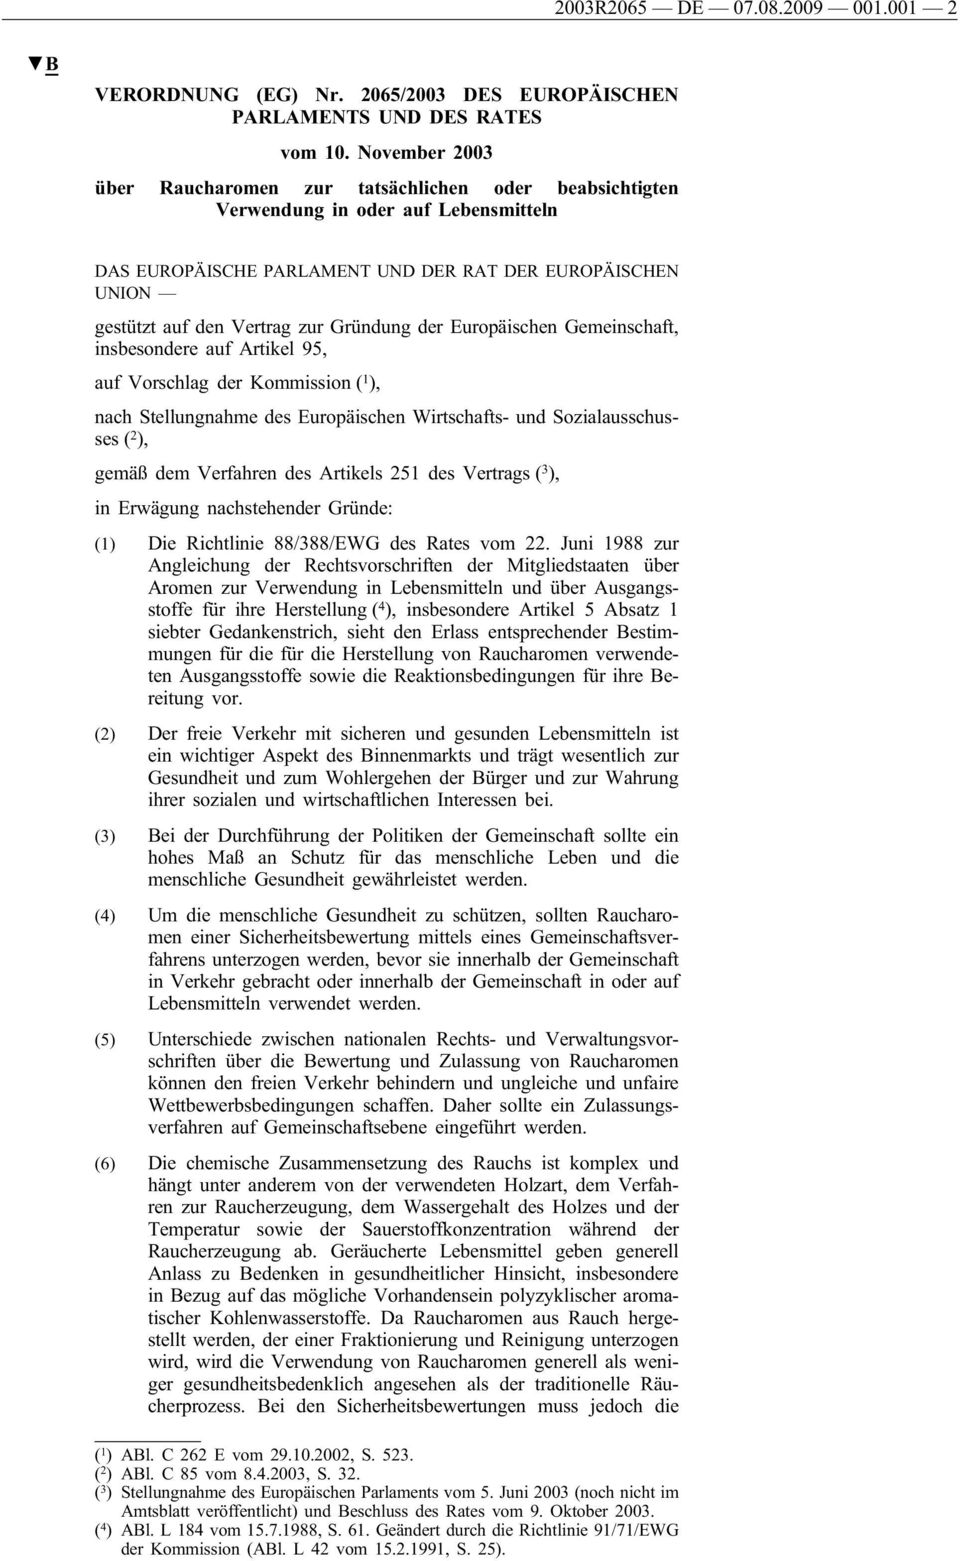 Gründung der Europäischen Gemeinschaft, insbesondere auf Artikel 95, auf Vorschlag der Kommission ( 1 ), nach Stellungnahme des Europäischen Wirtschafts- und Sozialausschusses ( 2 ), gemäß dem